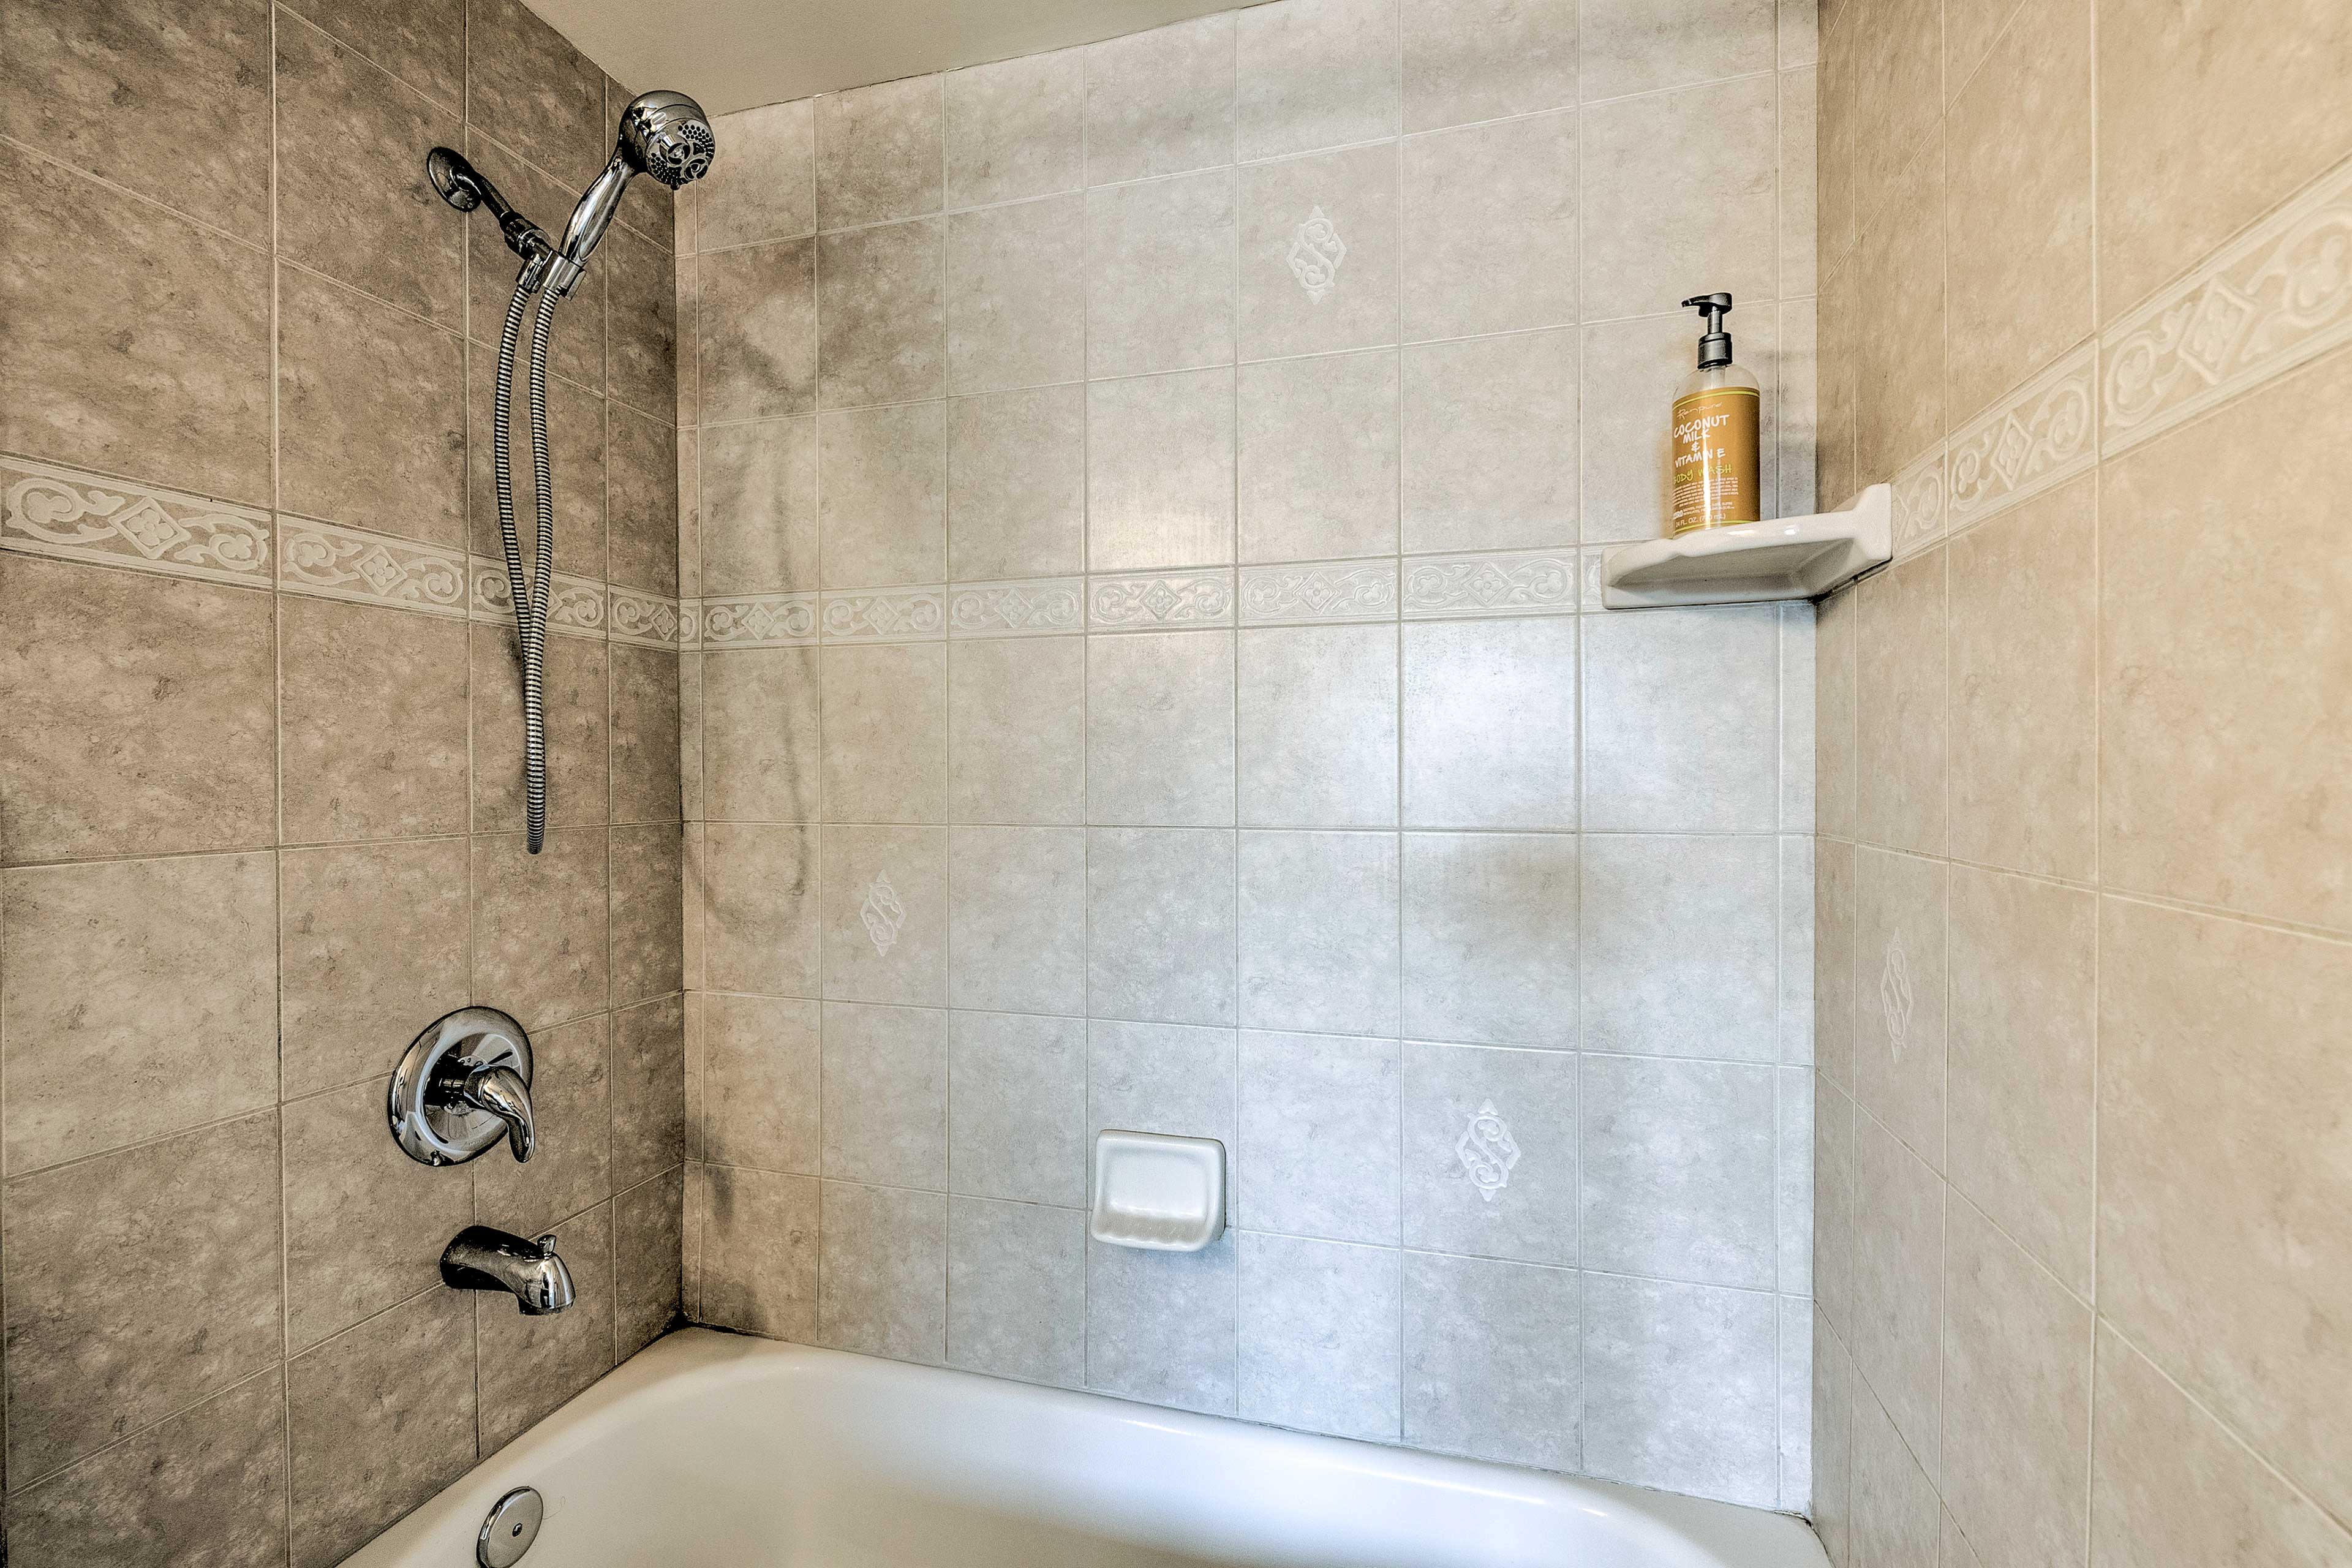 Full Bathroom | Tub/Shower Combo